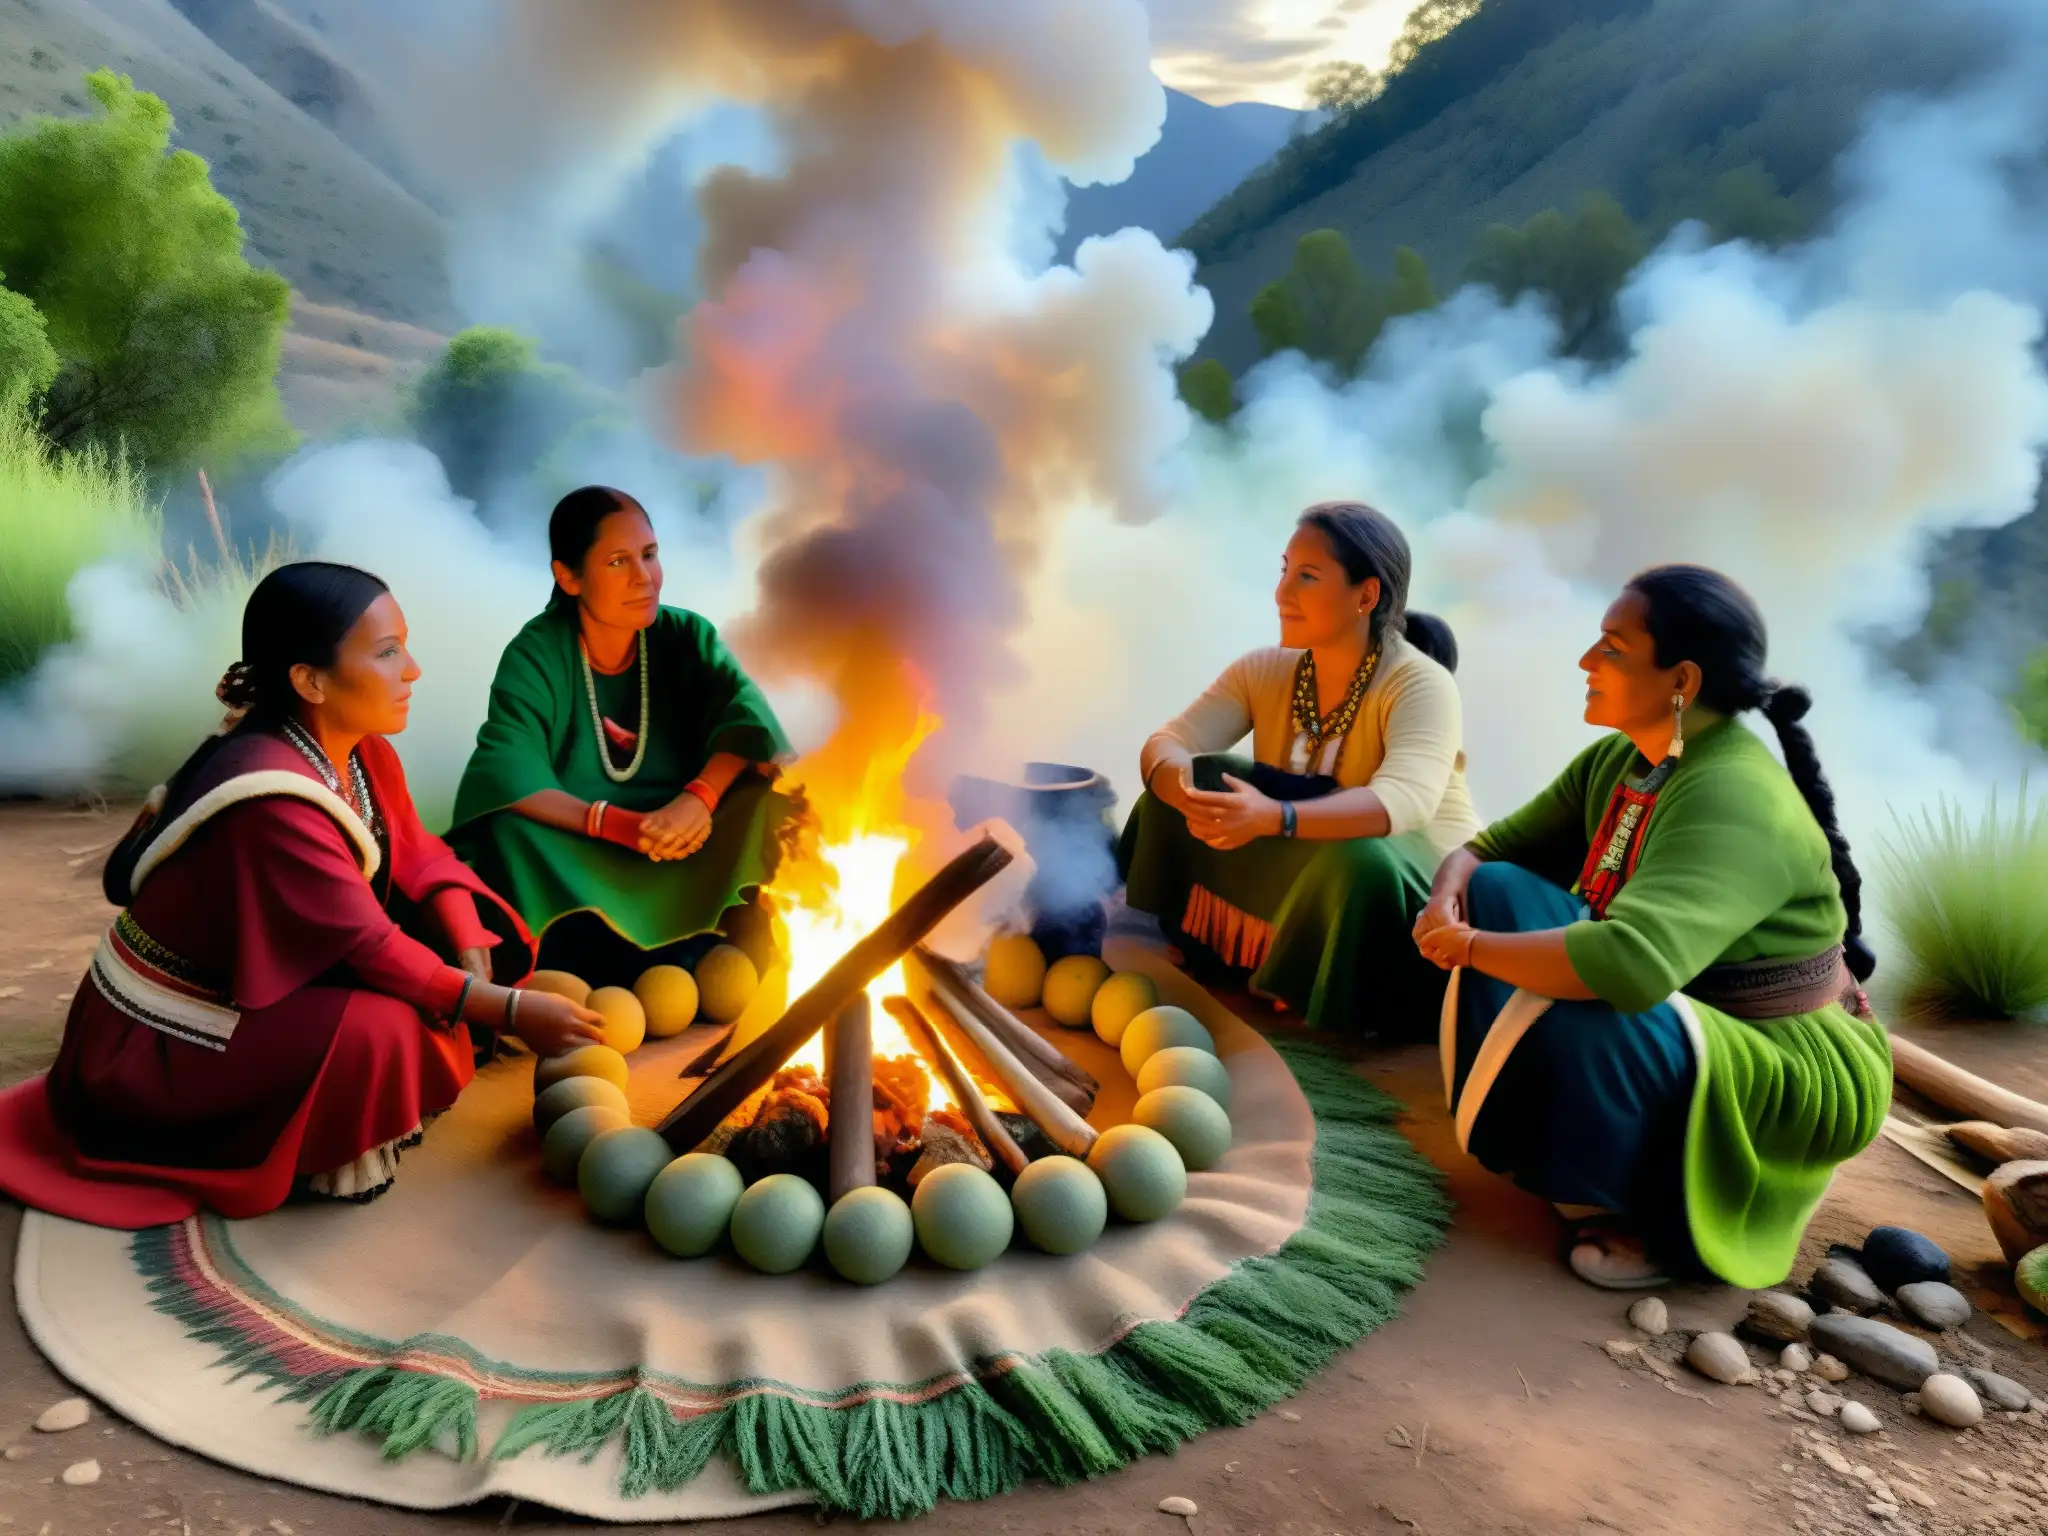 Mujeres indígenas realizan rituales de hechicería en la misteriosa sierra neoleonesa, entre la neblina y el fuego